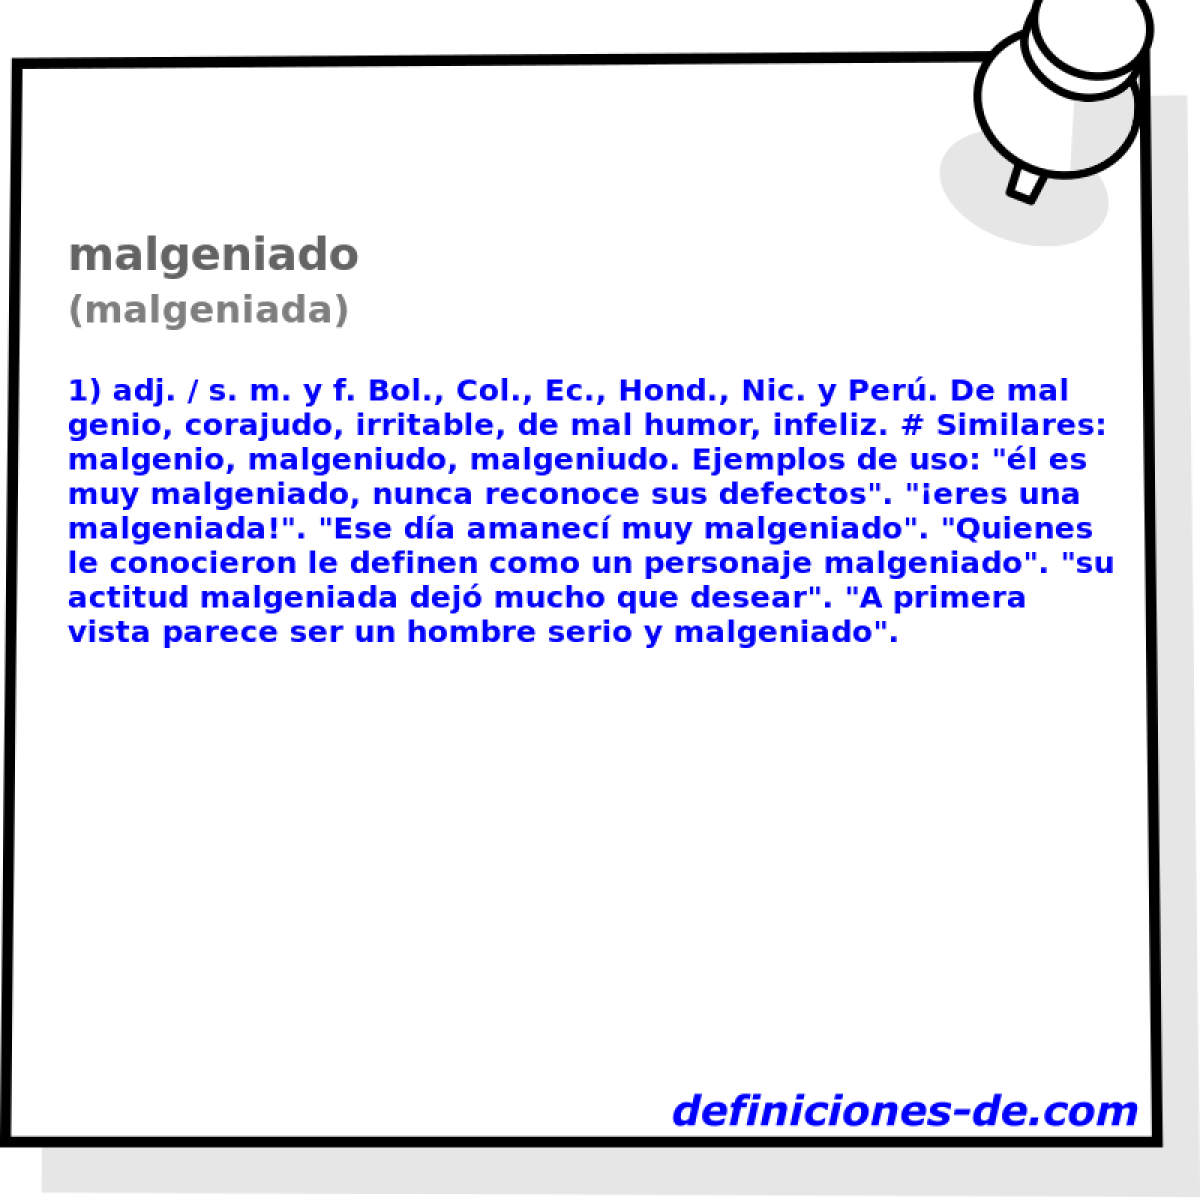 malgeniado (malgeniada)